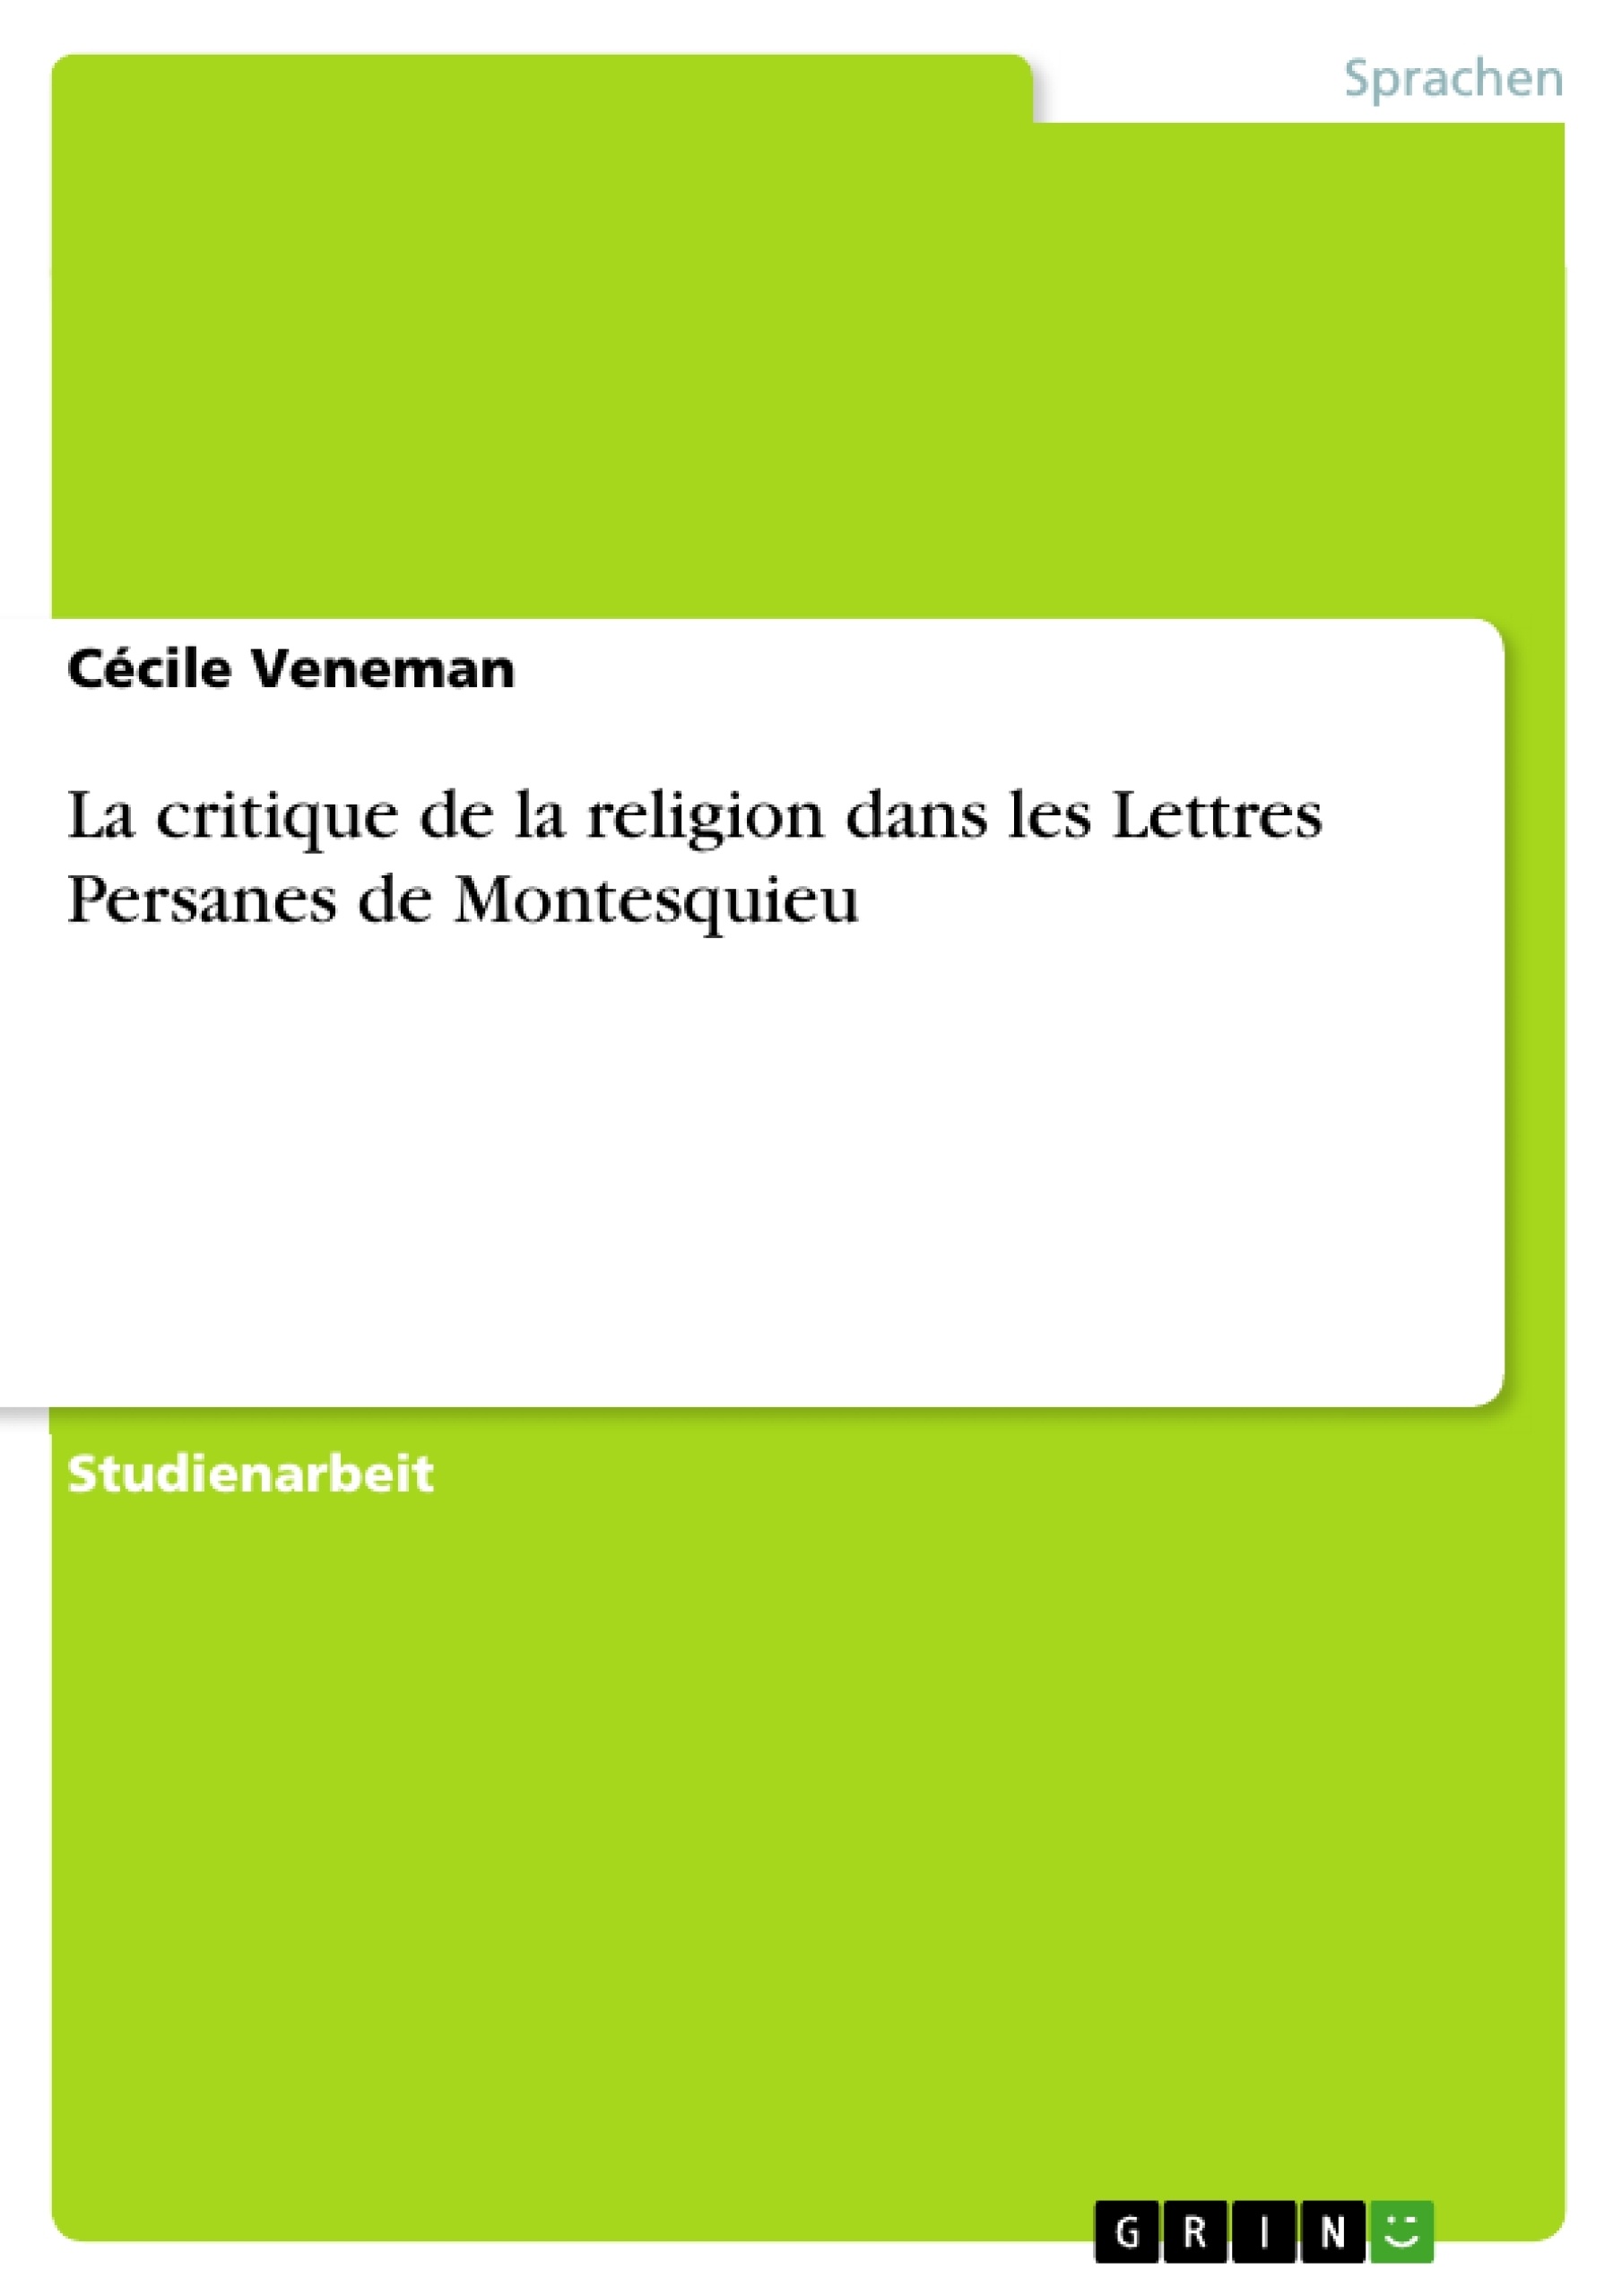 Title: La critique de la religion dans les Lettres Persanes de Montesquieu